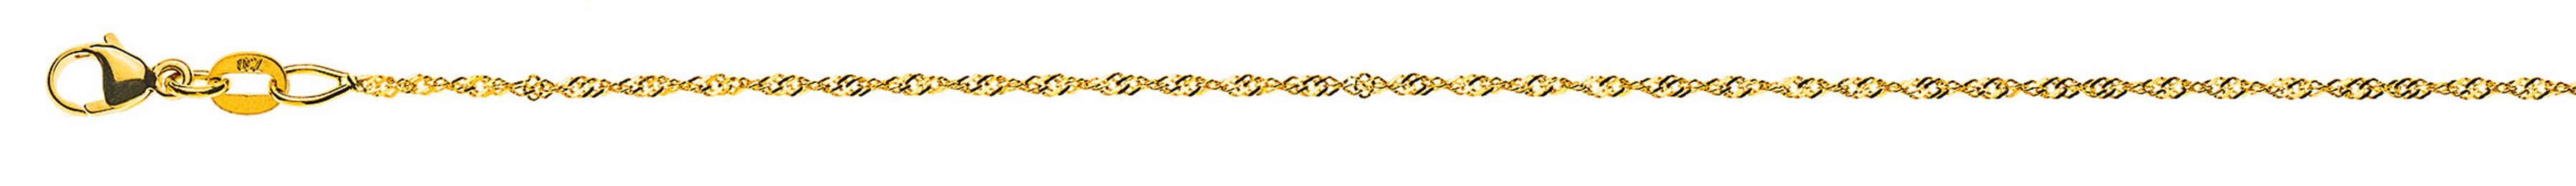 AURONOS Prestige Necklace Yellow Gold 18K Singapore Chain 50cm 1.2mm